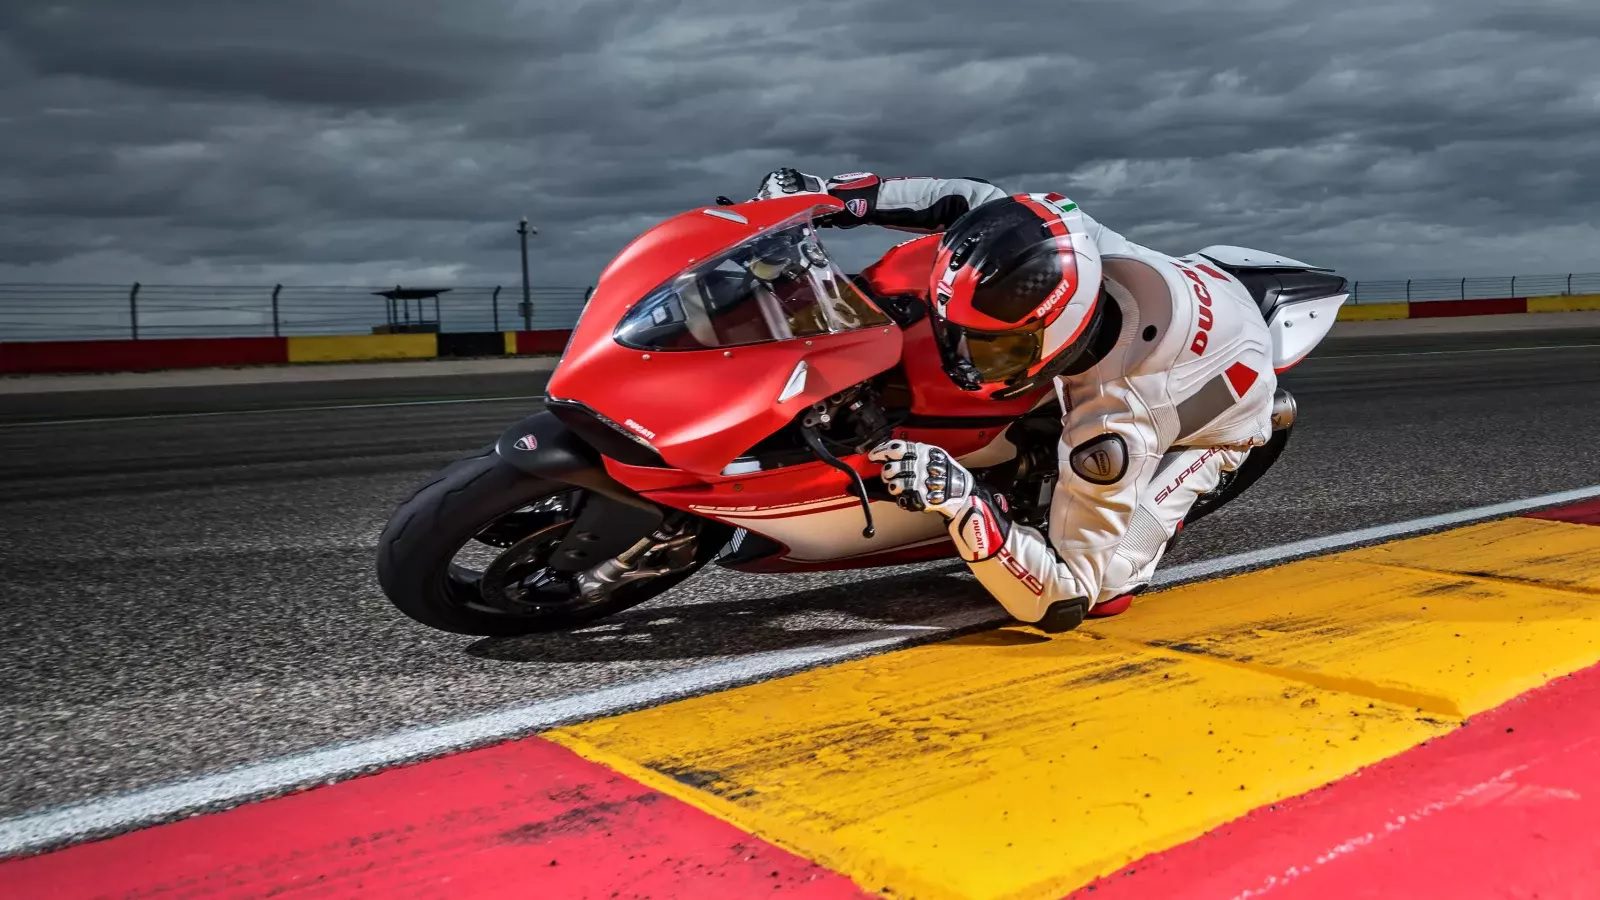 2017 Ducati 1299 Superleggera Cornering On Track